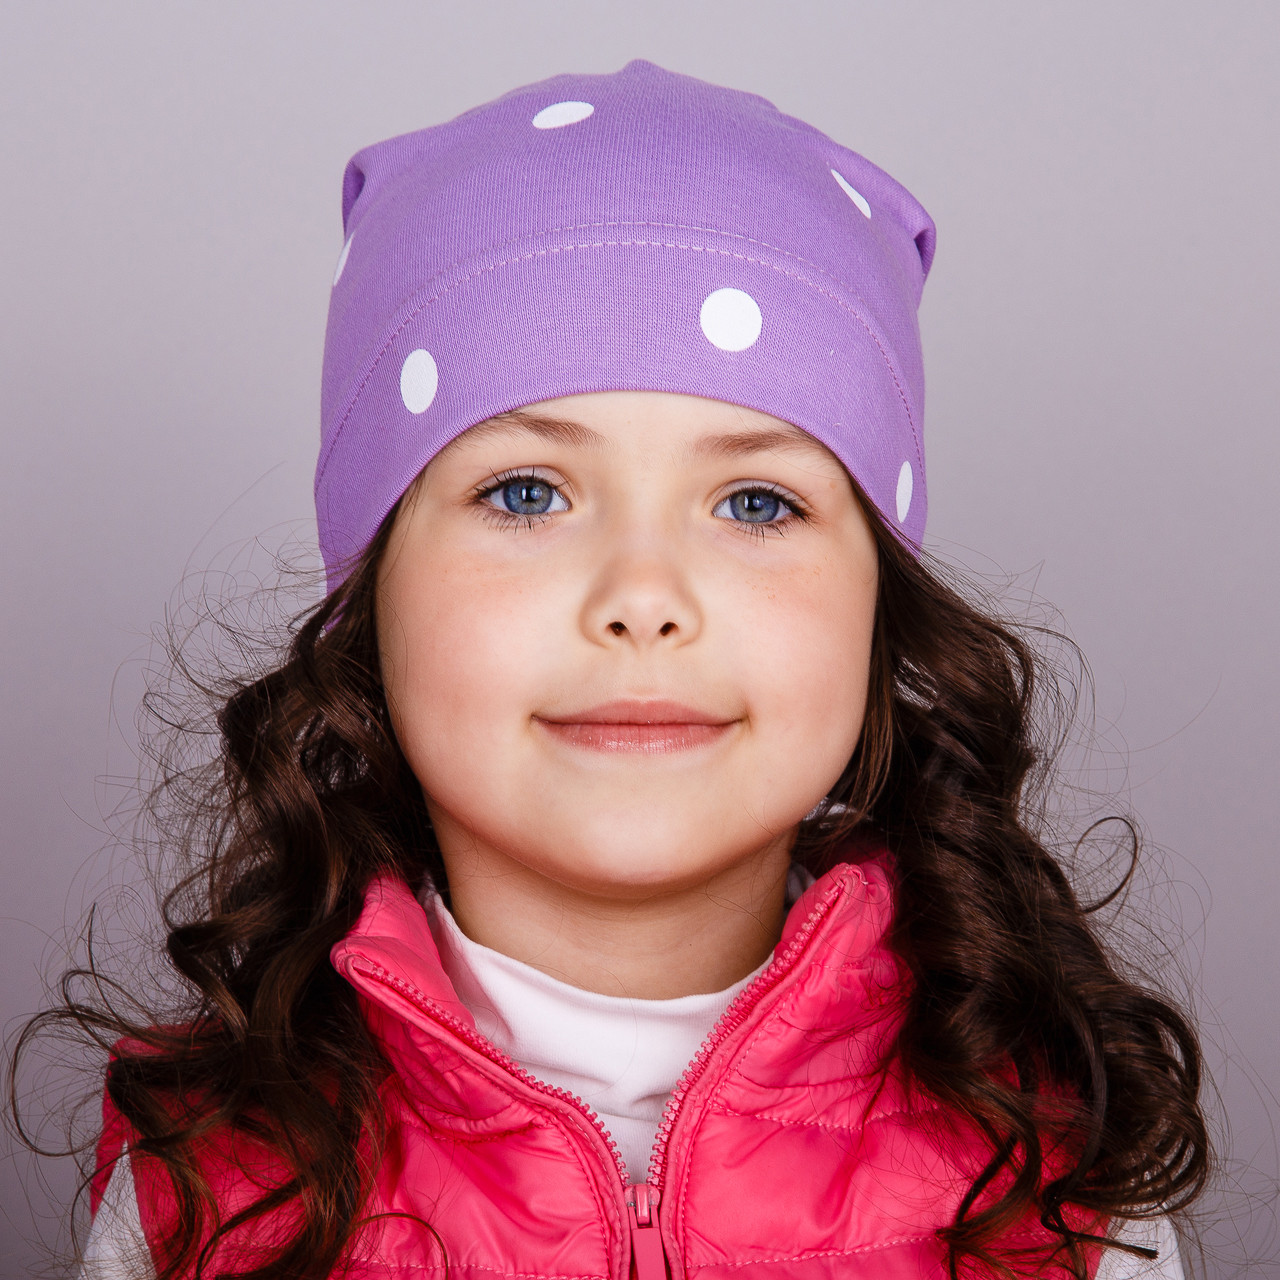 Модный ребенок в холодное время года или выбираем модную шапку для детей